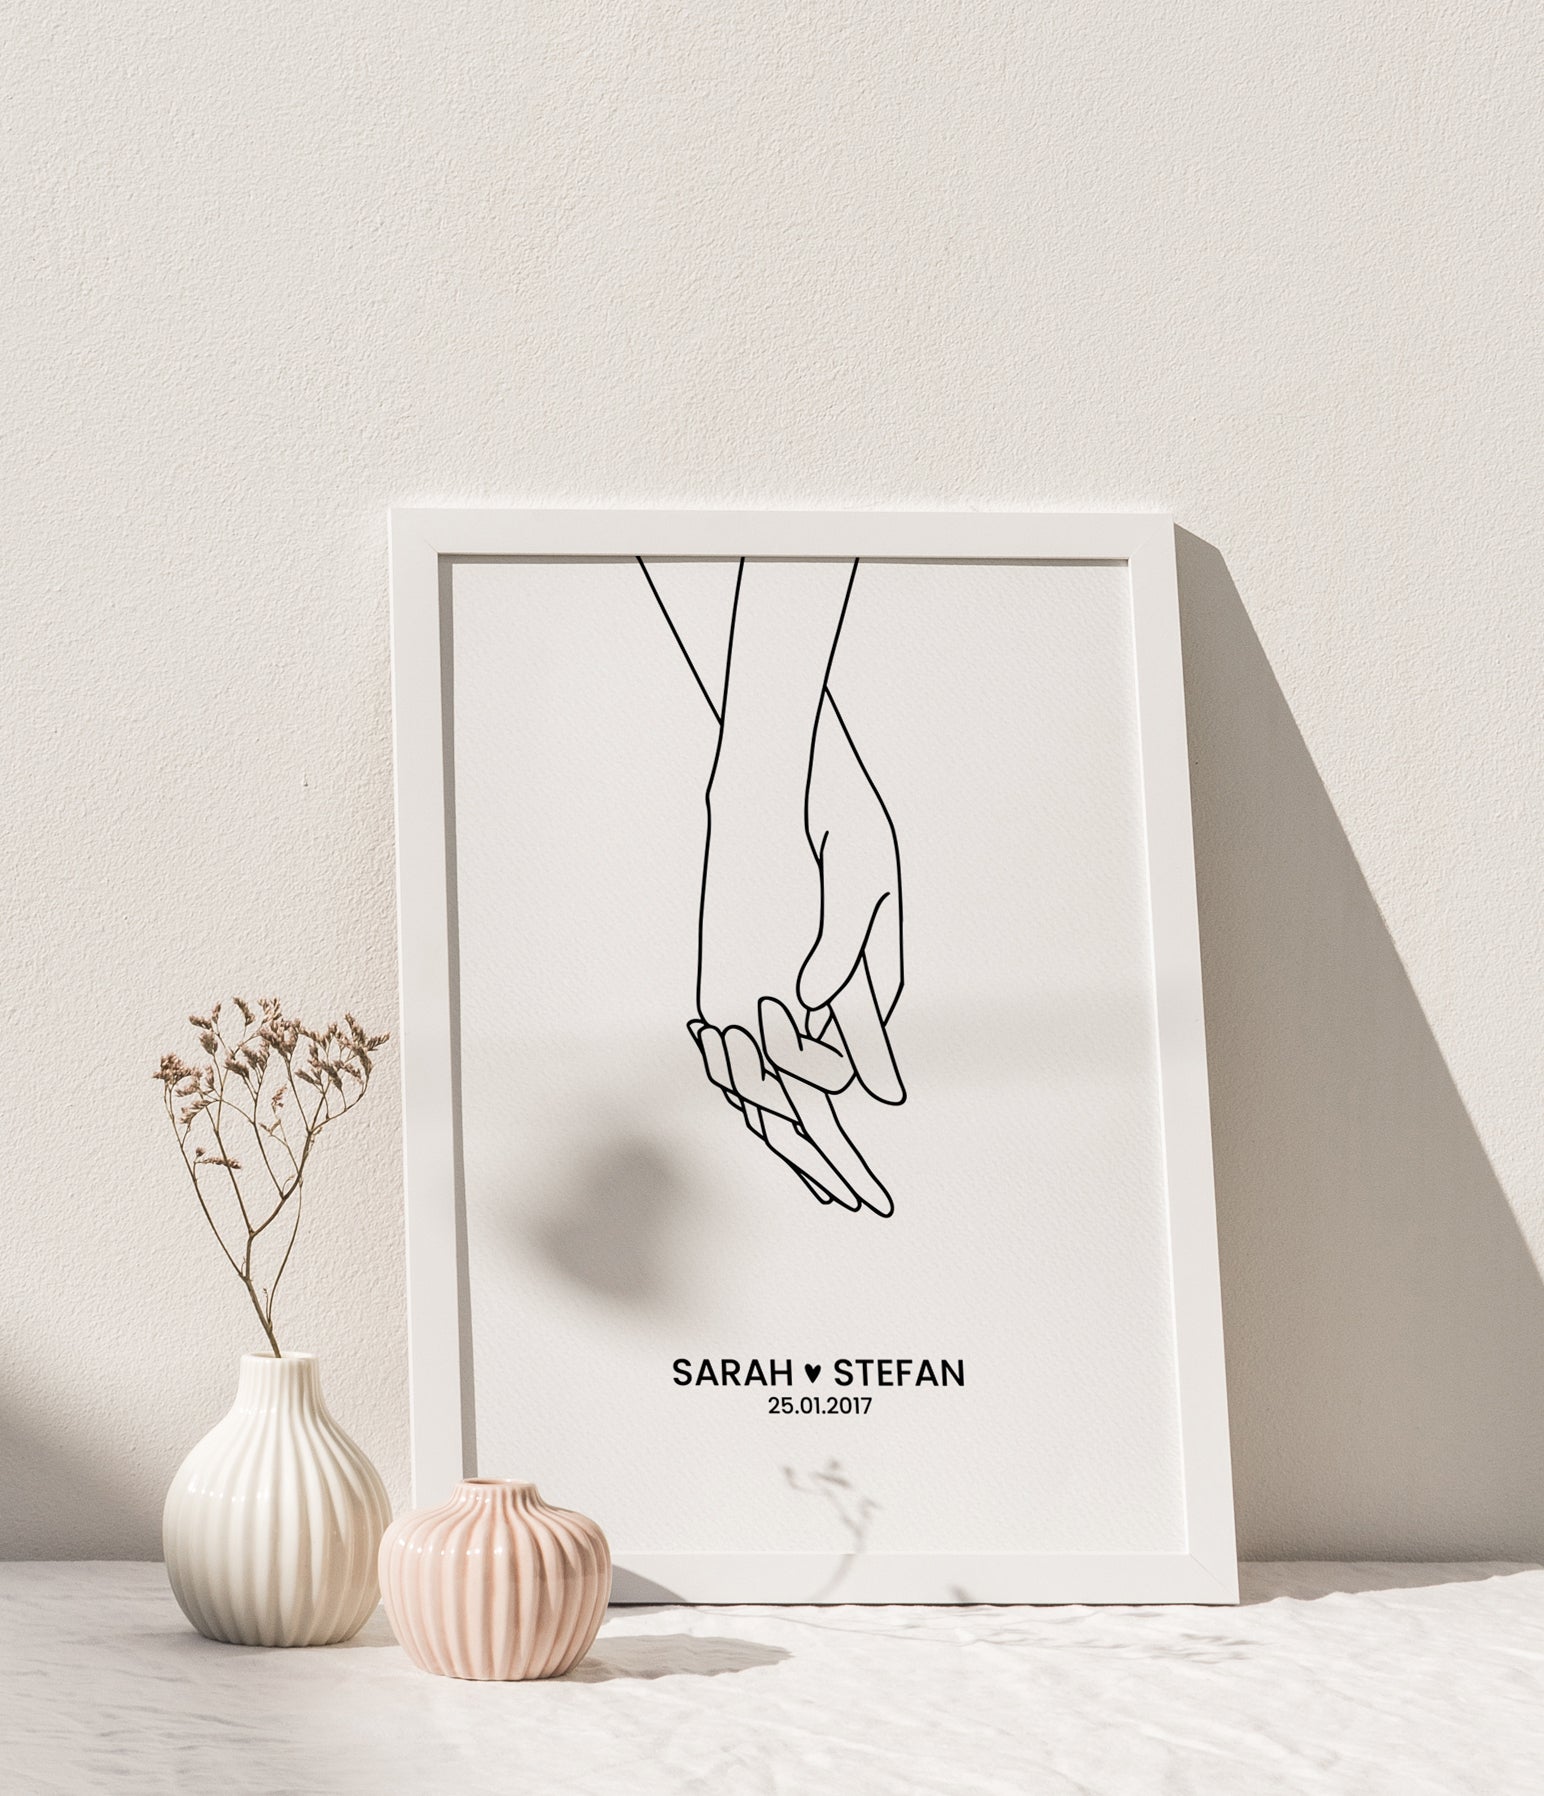 Händchen halten - Hand in Hand - Hände - Poster